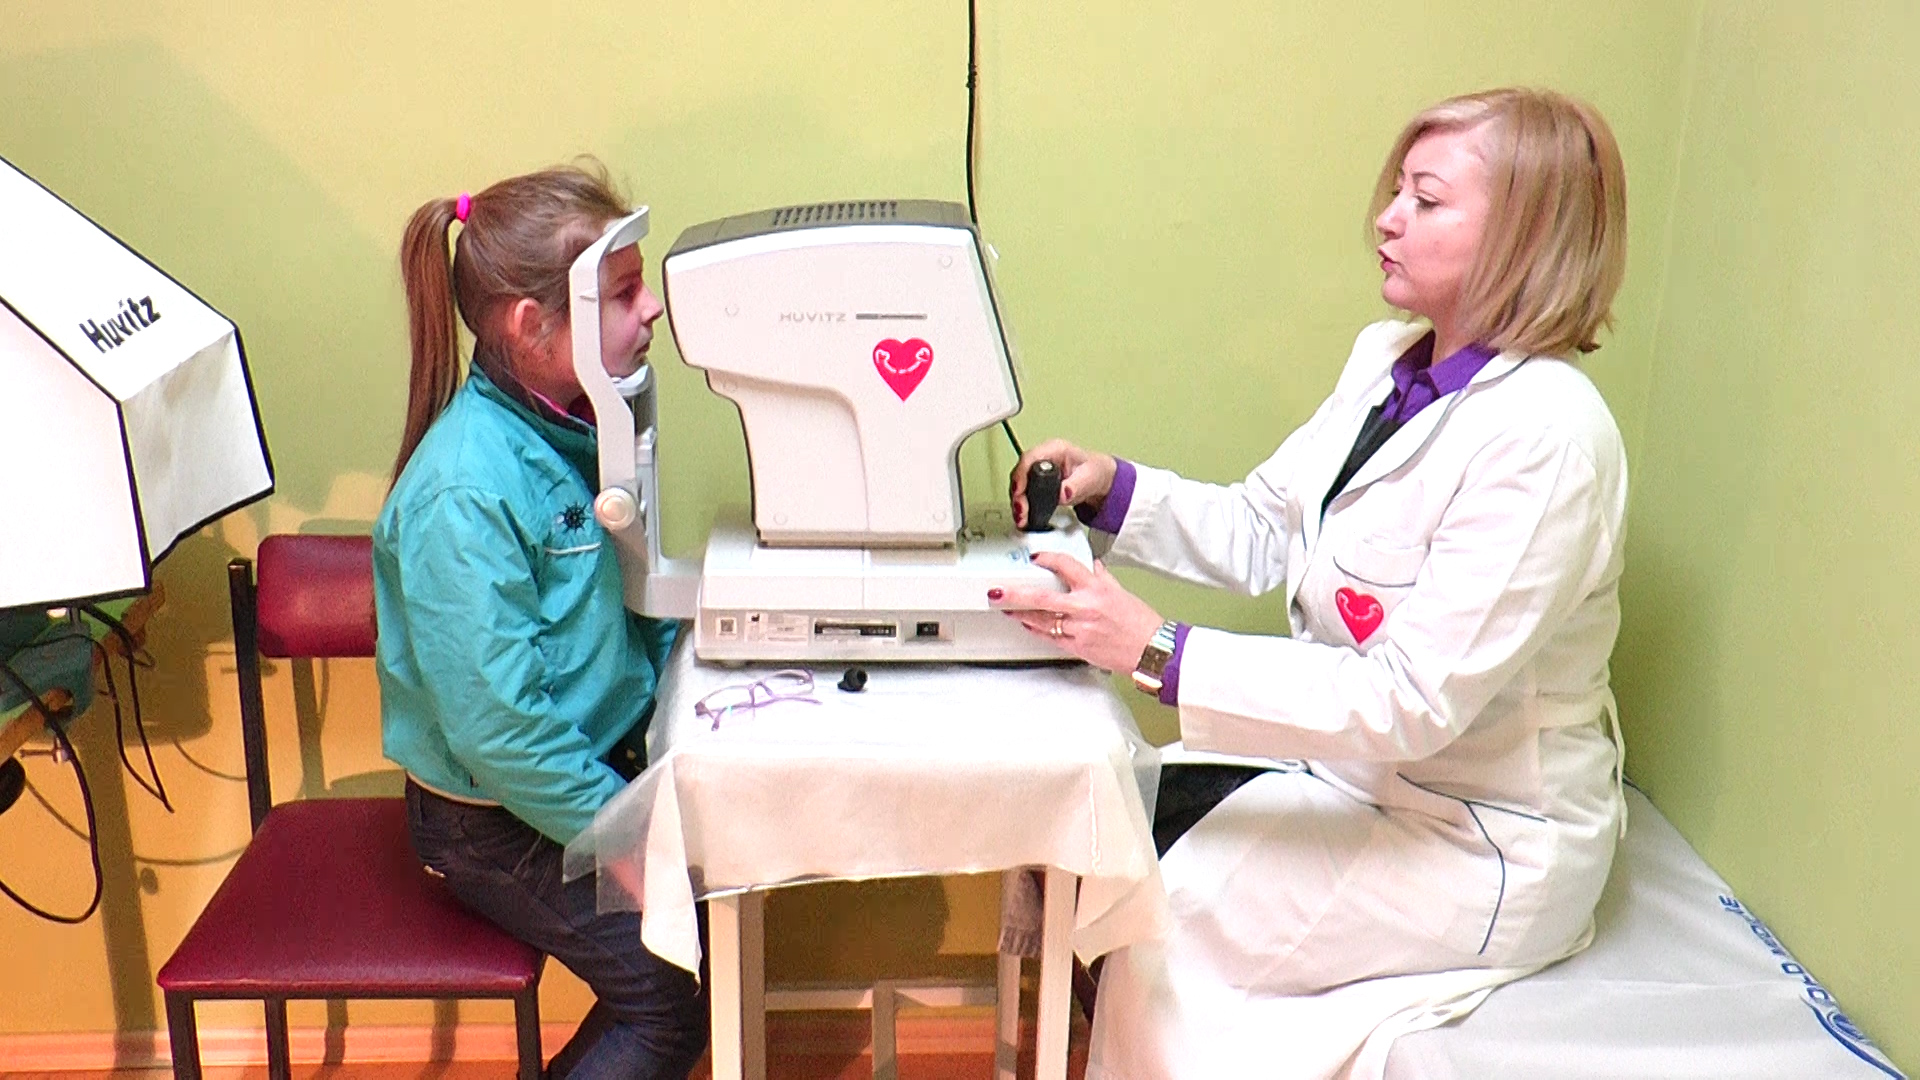 У Закарпатській ОДЛ закупили медичне обладнання для офтальмологічного відділення в рамках акції "Серце до серця" (ВІДЕО)